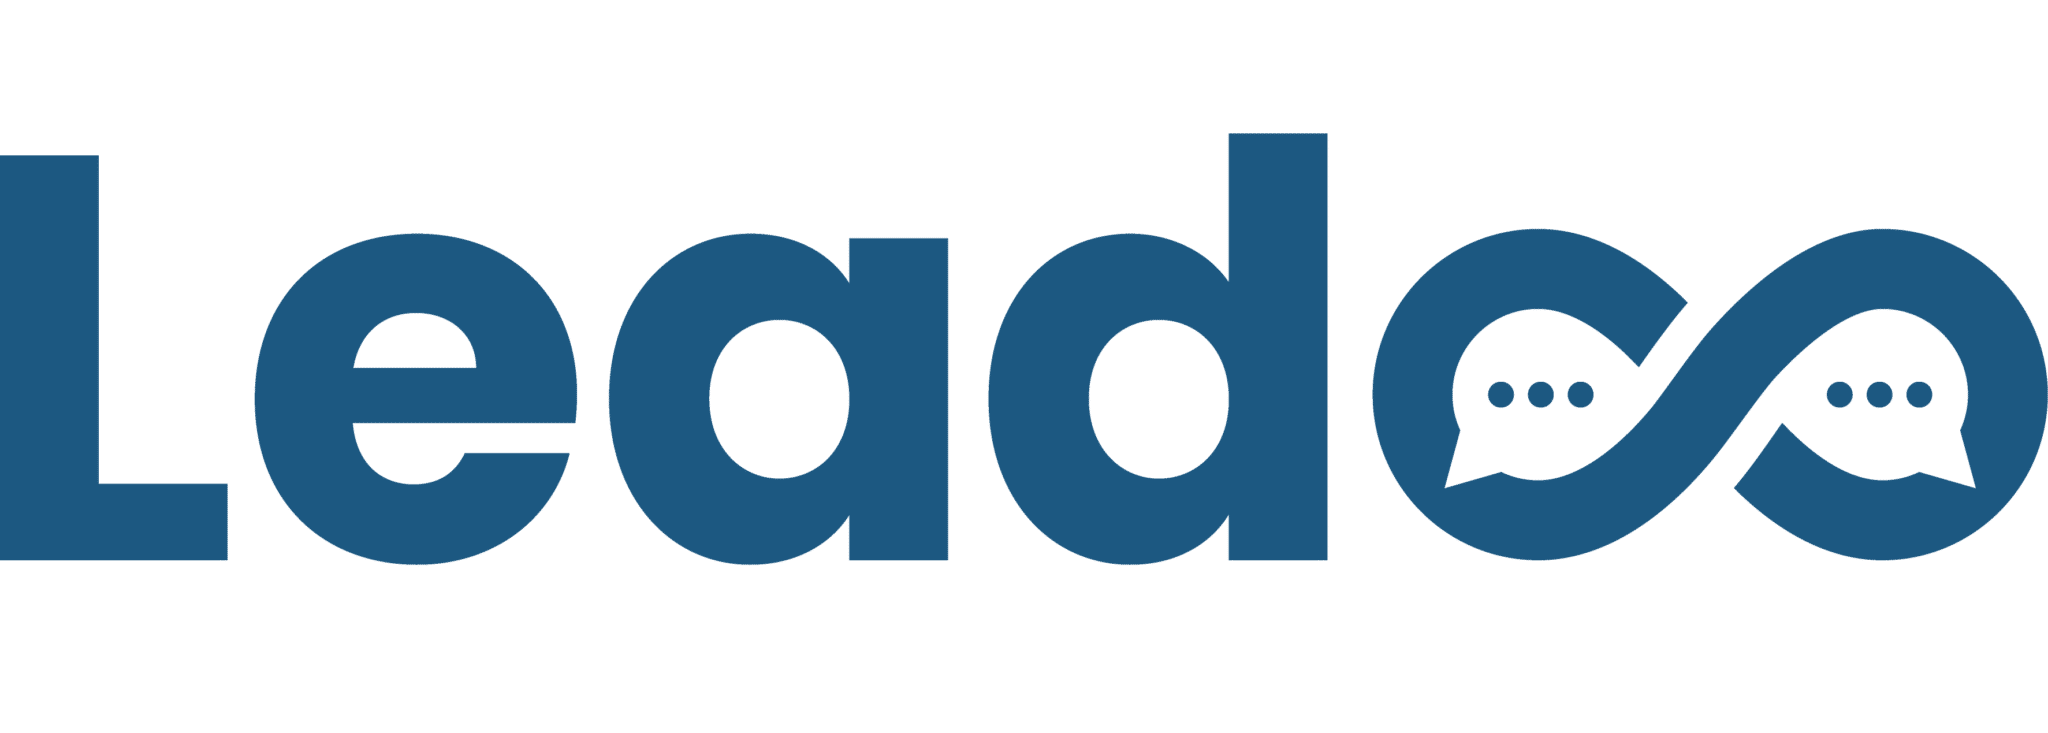 Leadoo - Conversion Platform